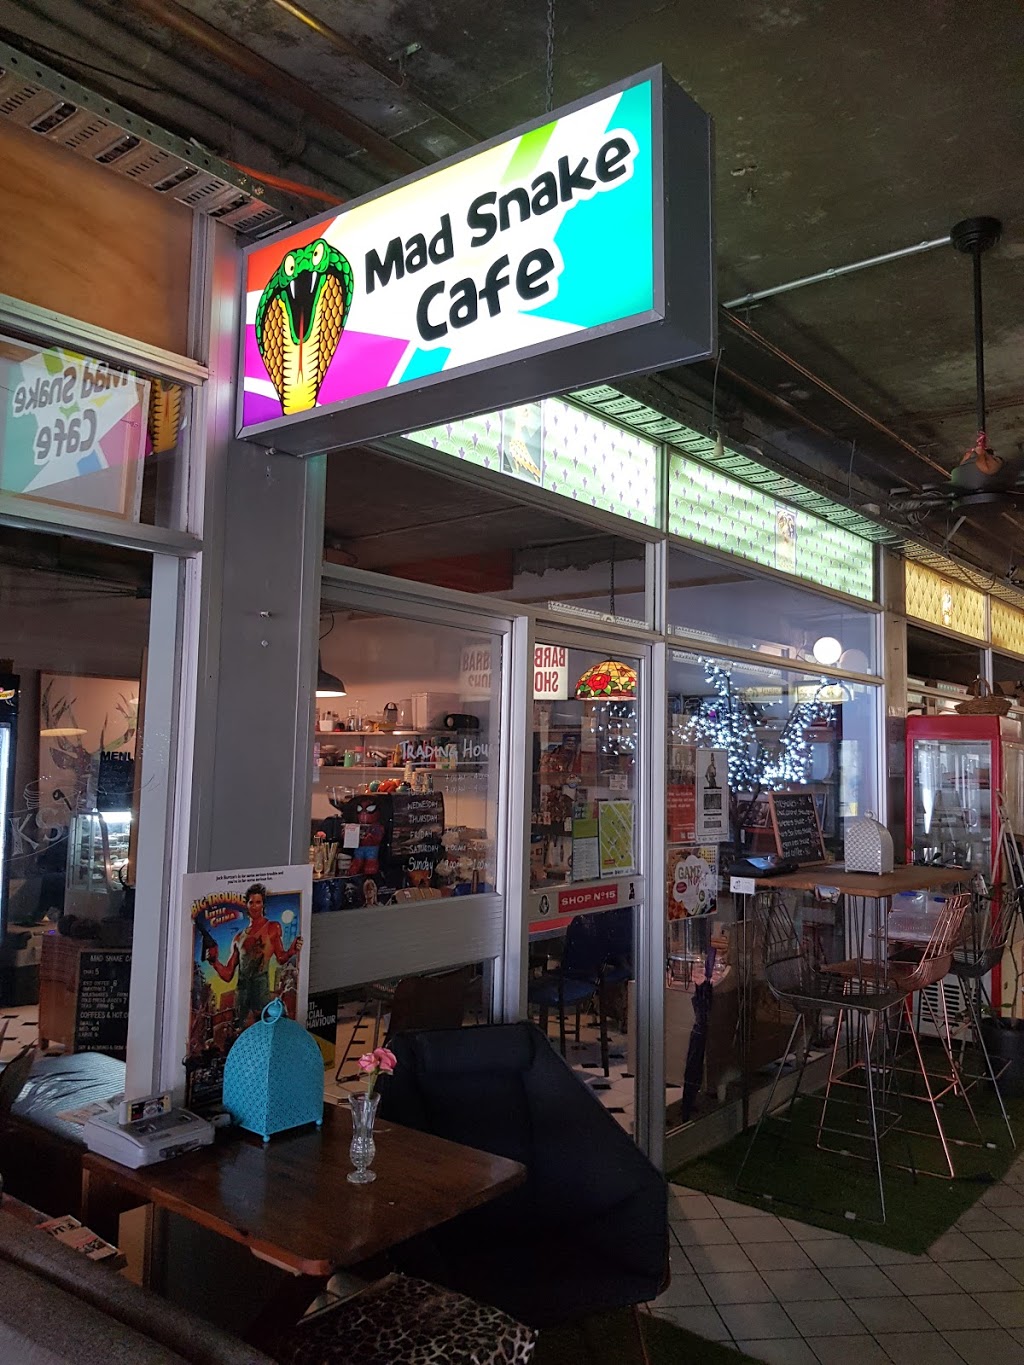 Mad Snake Cafe | cafe | Shop 15/35 Cavenagh St, Darwin City NT 0800, Australia | 0416784968 OR +61 416 784 968